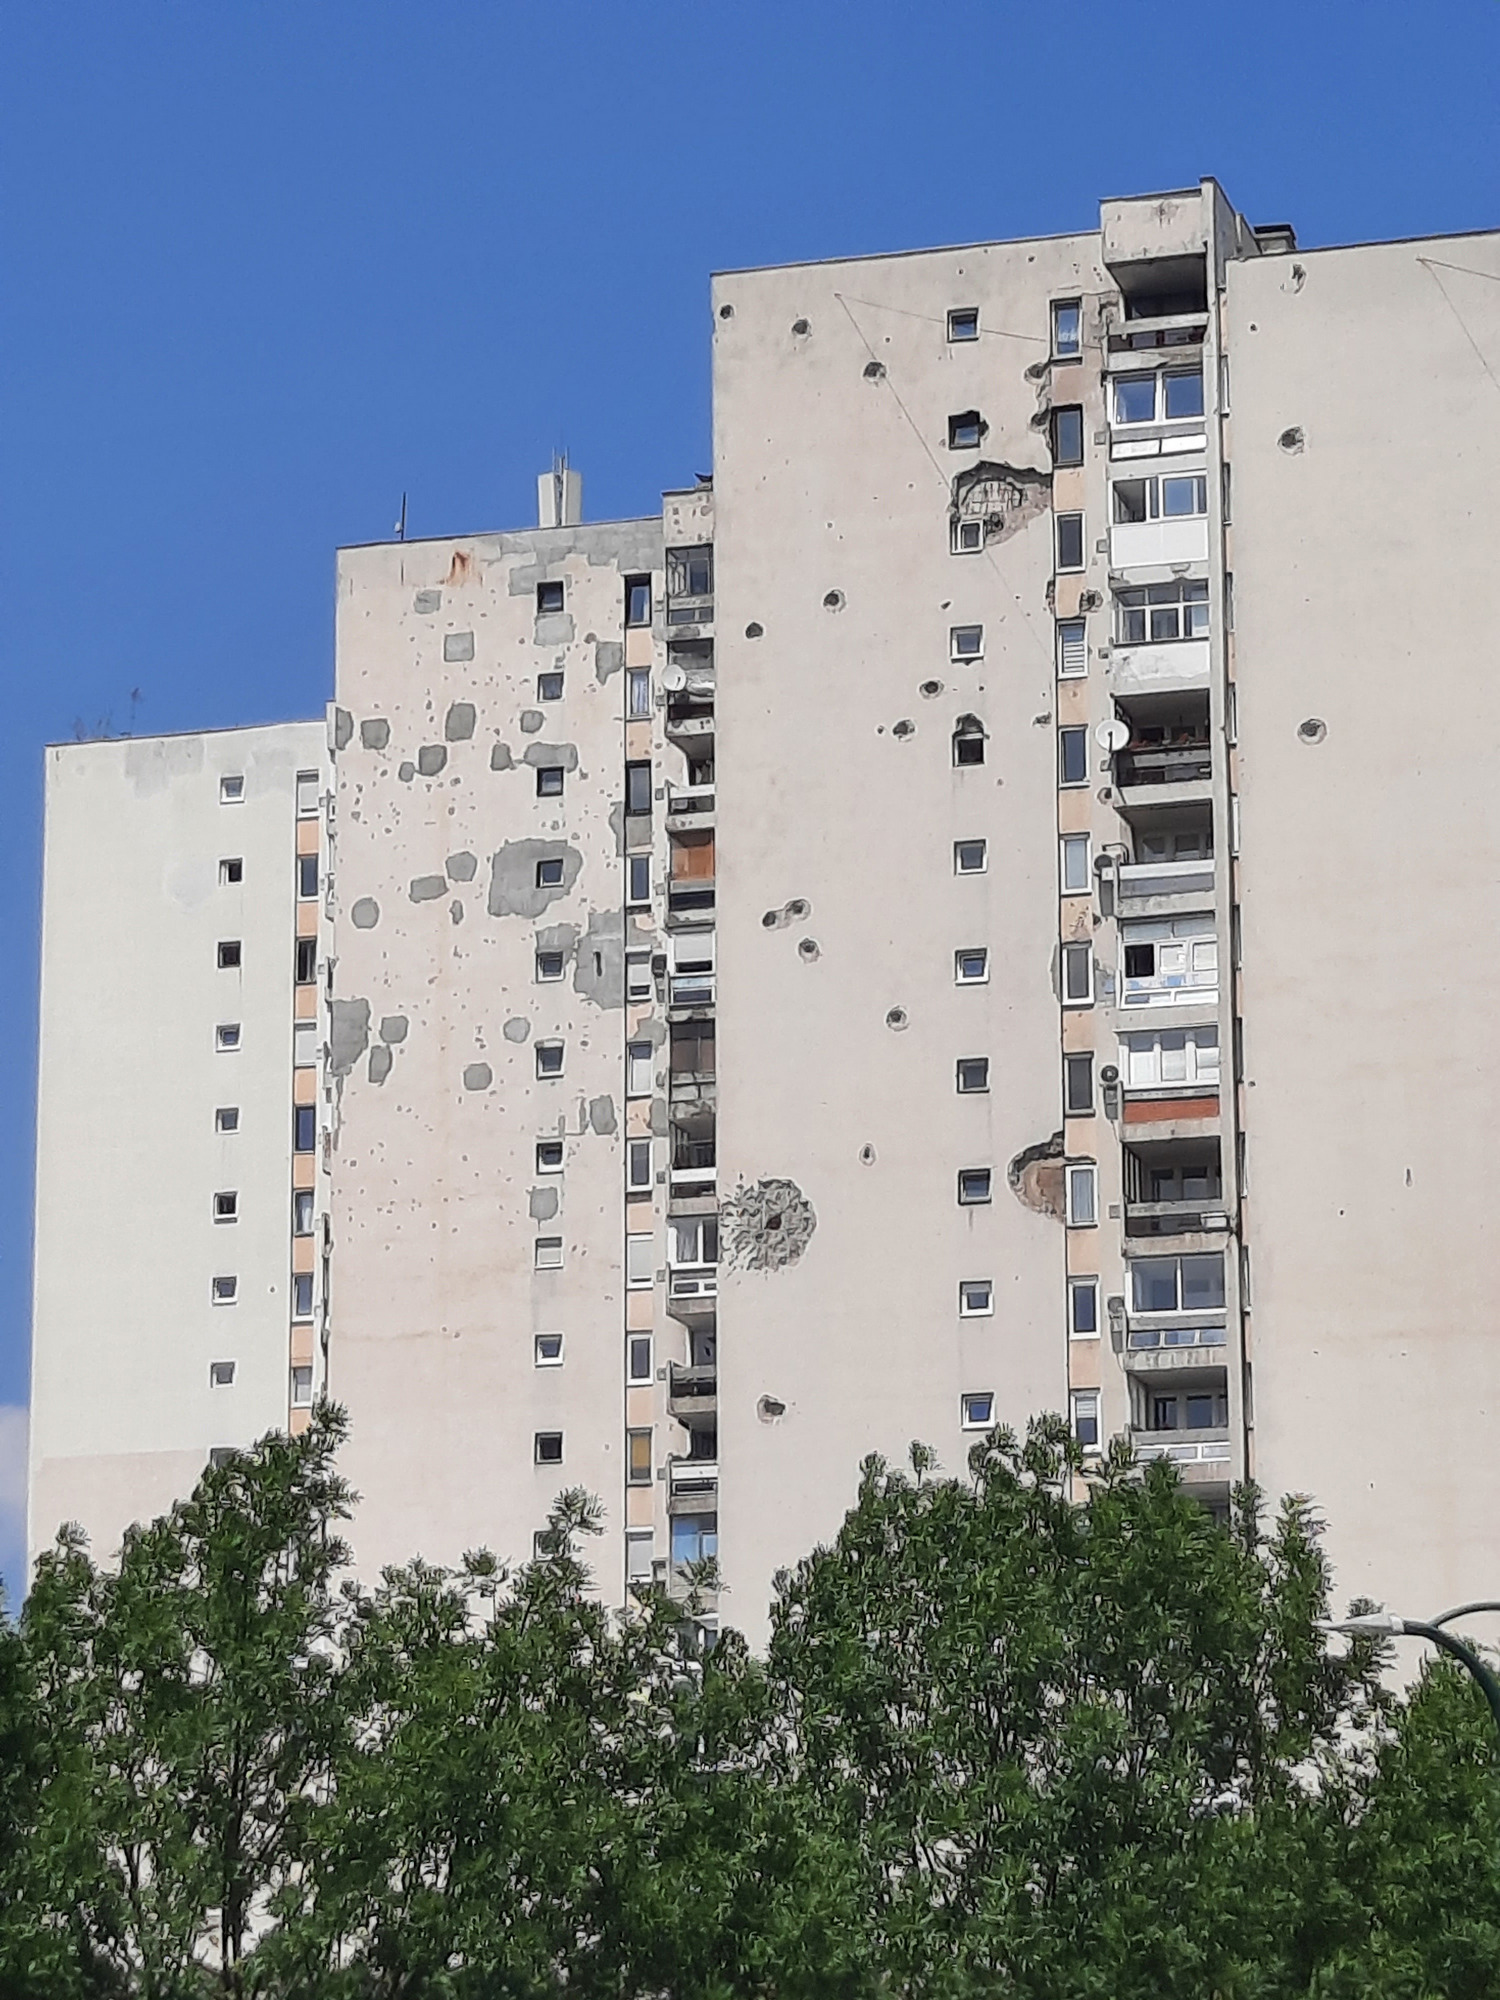 Wojenne zniszczenia wciąż widoczne na blokach w sarajewskiej dzielnicy Dobrinja Fot. Mateusz Styrczula